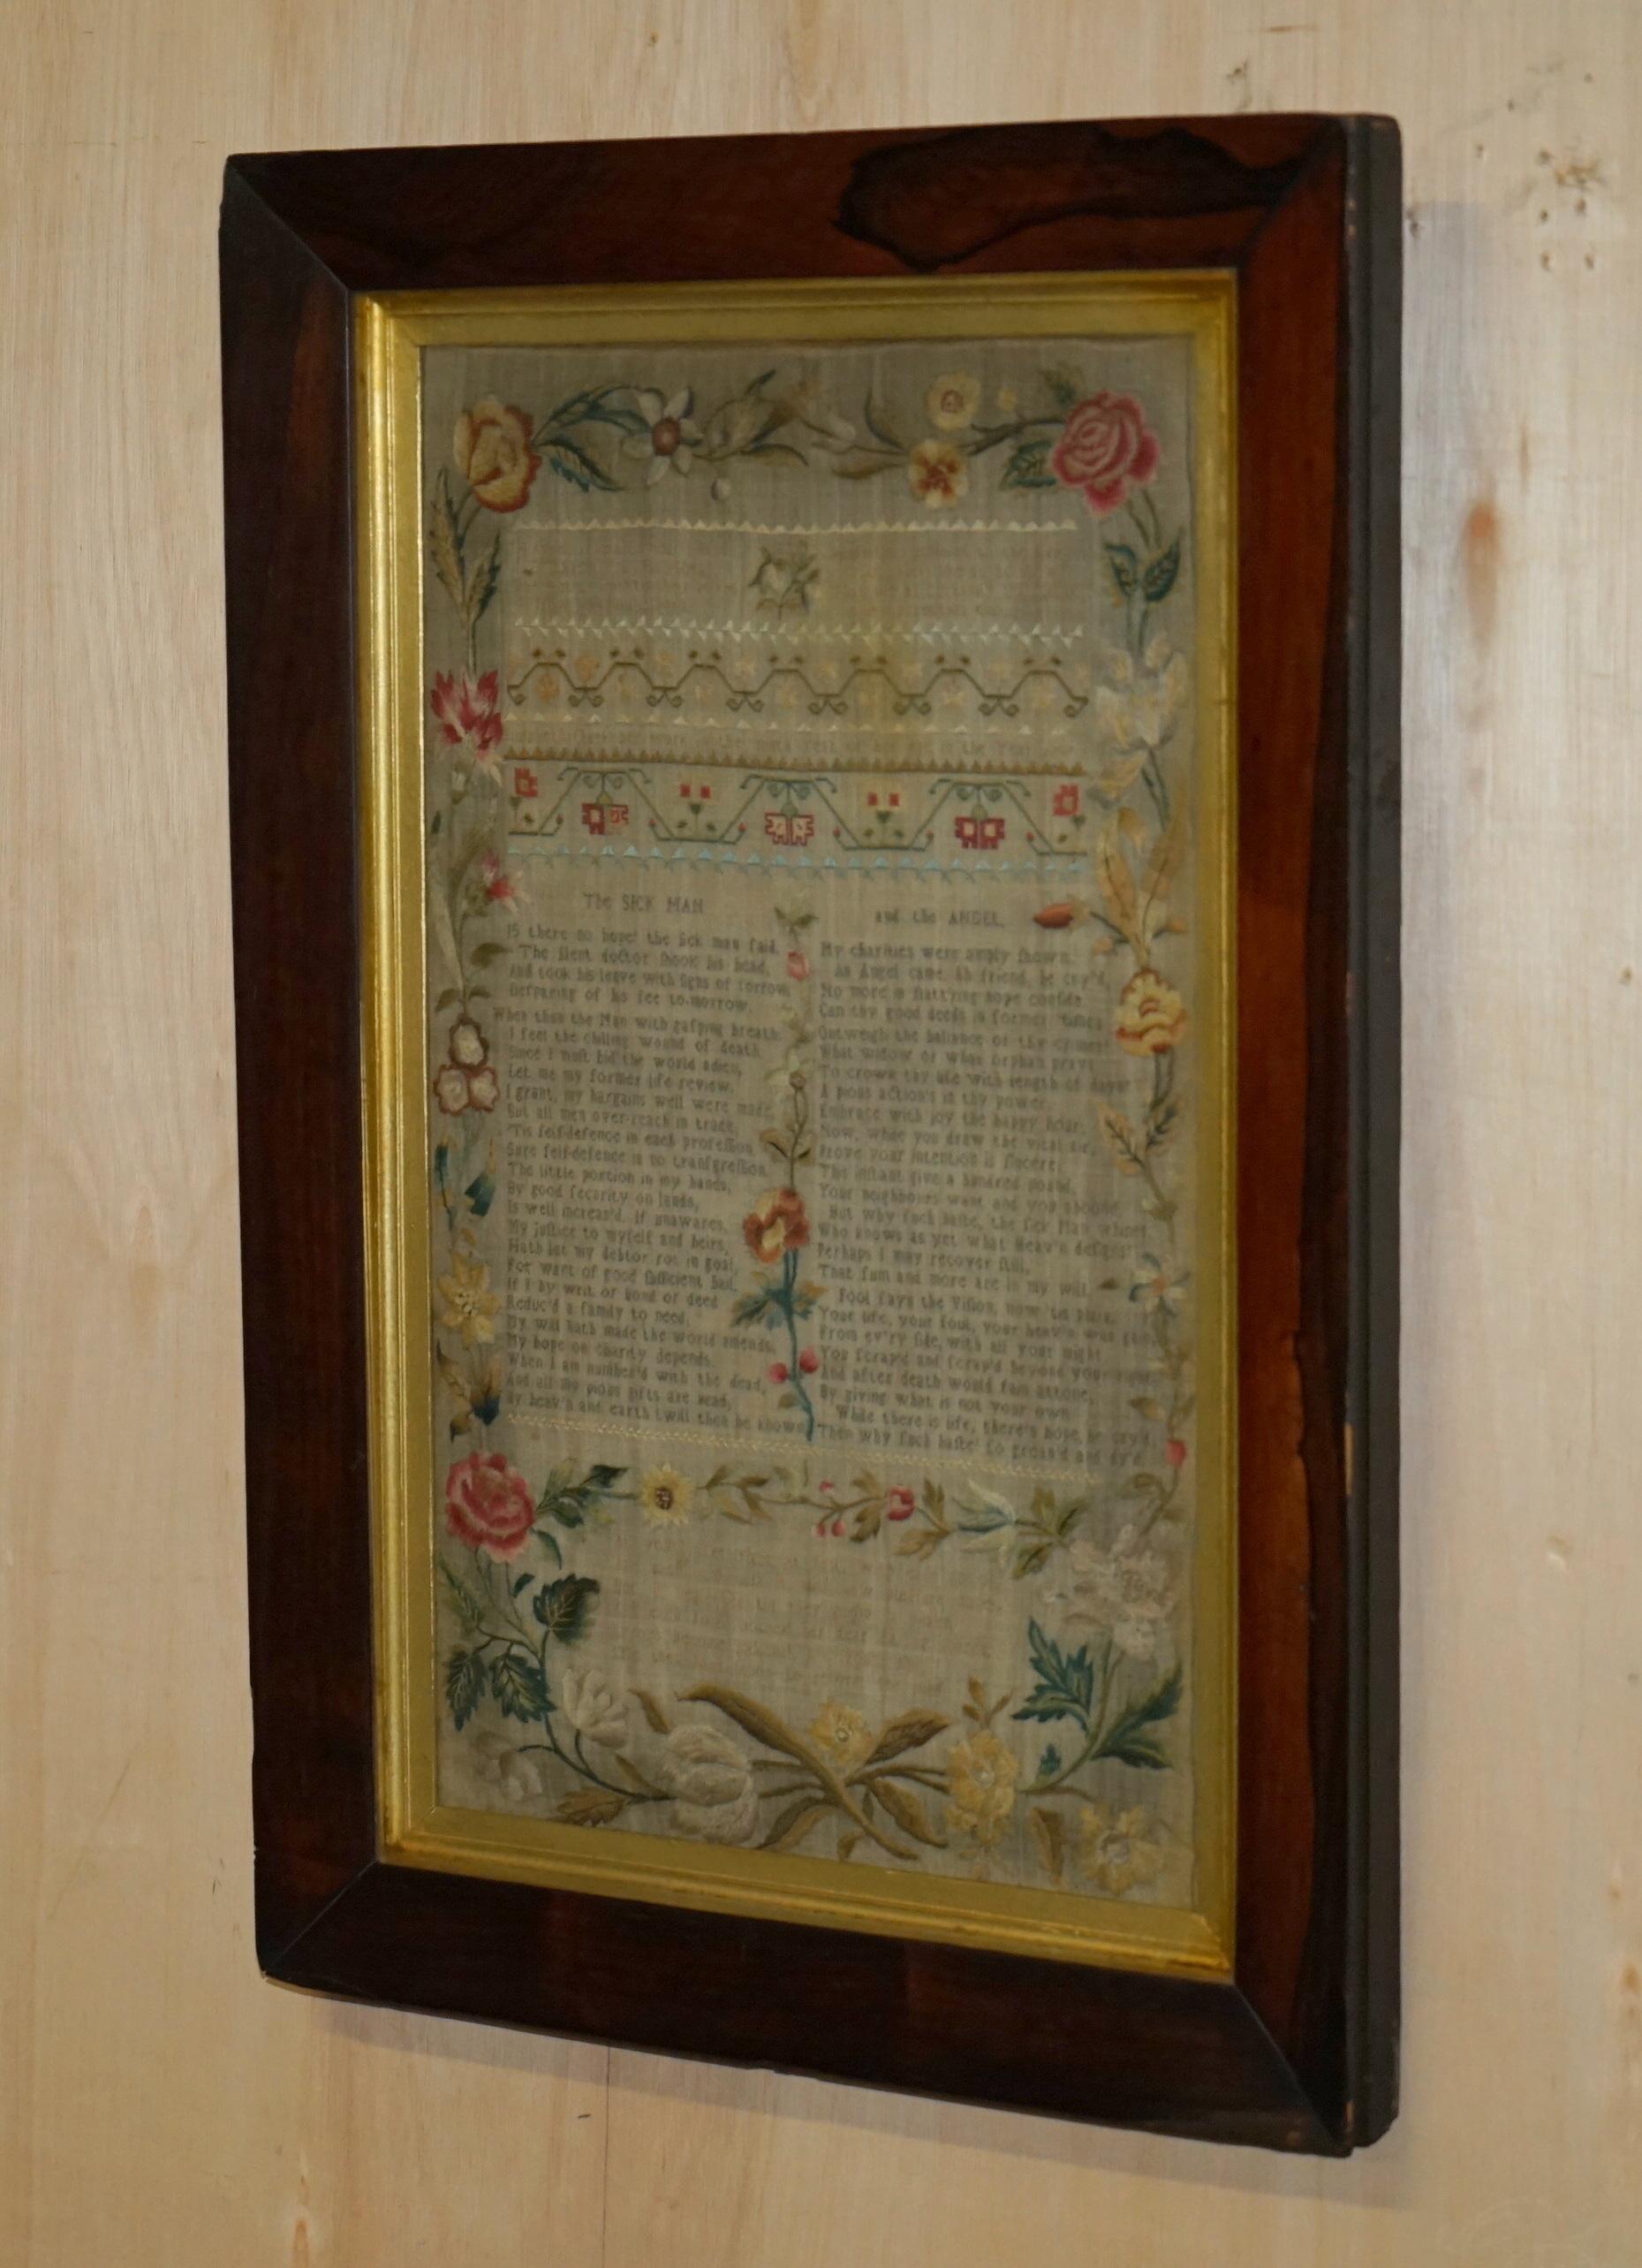 Royal House Antiques

Royal House Antiques freut sich, dieses erstaunliche, 1787 datierte Stickmustertuch, das Elizabeth Clark im Alter von neun Jahren signierte, zum Verkauf anbieten zu können. 

Ich habe vier weitere Versionen dieser Mustertücher